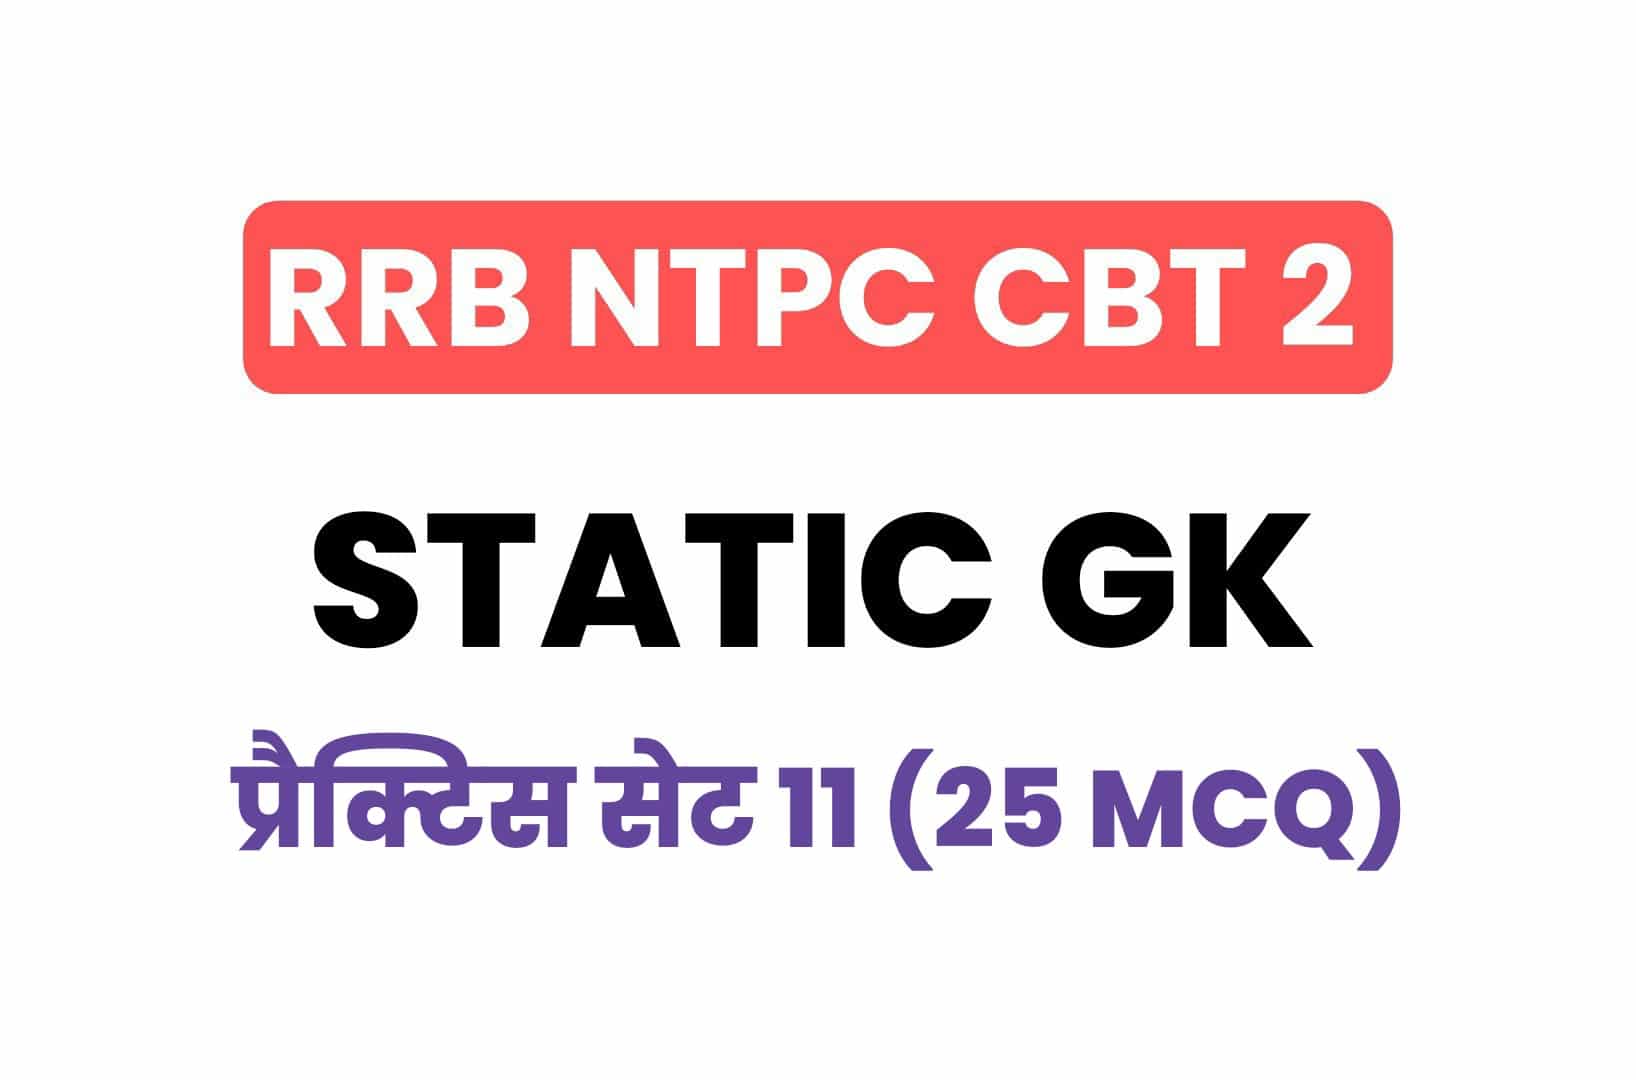 RRB NTPC CBT 2 Static GK प्रैक्टिस सेट 11: बचे इन आख़िरी दिनों में करें इन महत्वपूर्ण प्रश्नों का अध्ययन